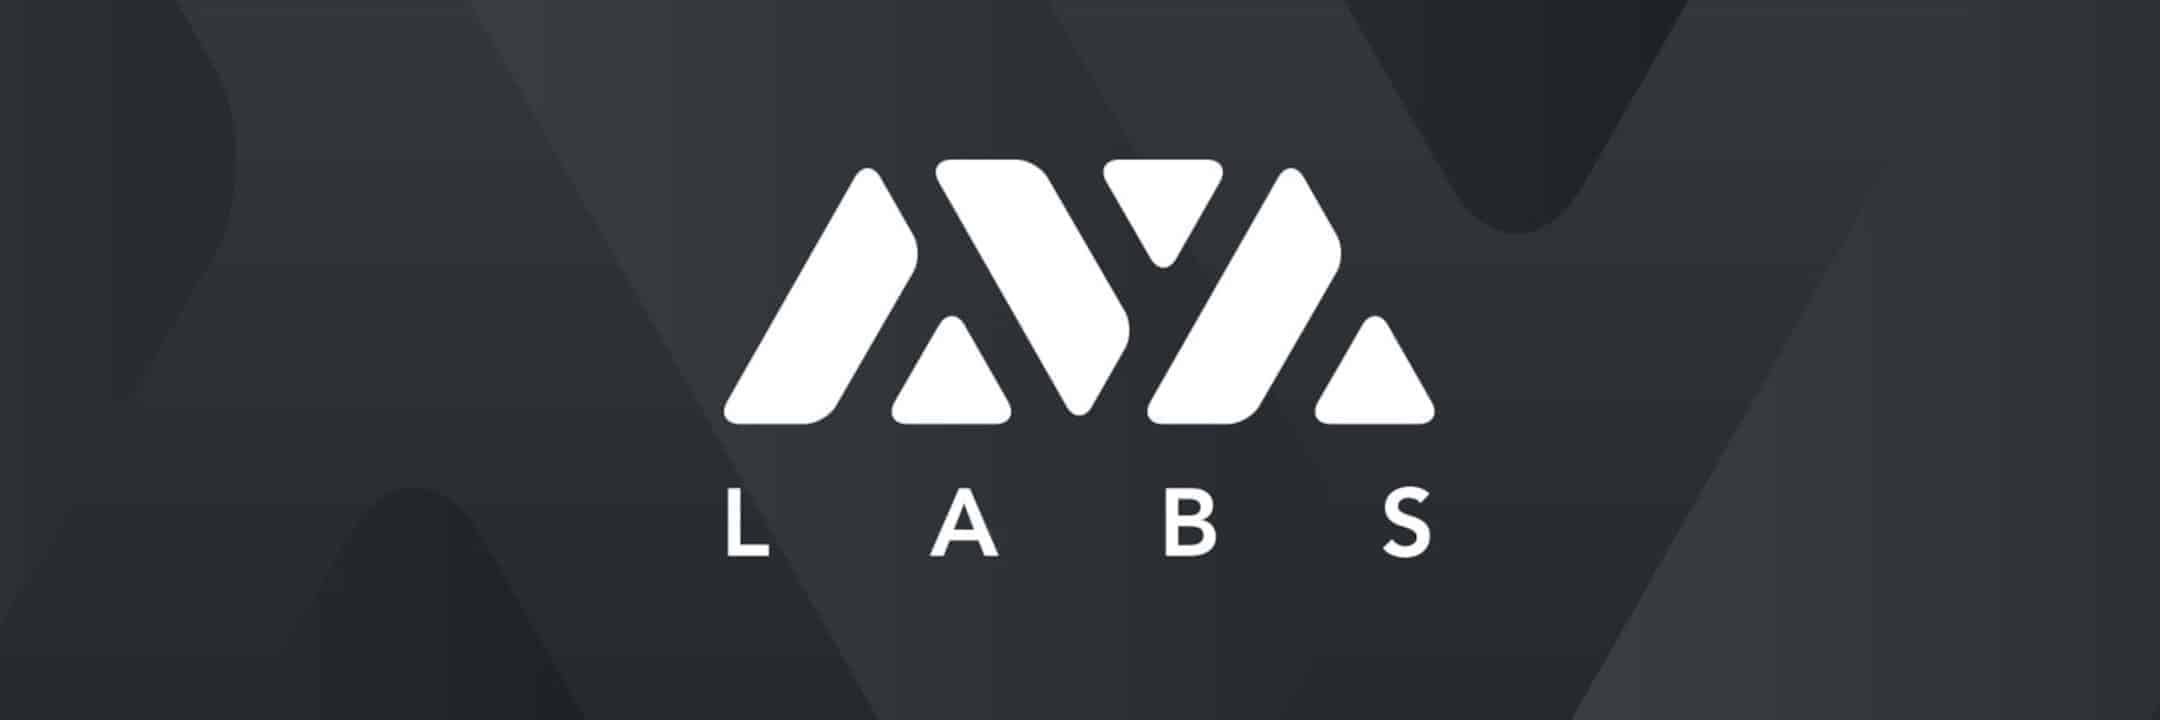 AVA Labs desarrolla su primer Hackathon Blockchain enfocado en estudiantes  universitarios de habla hispana